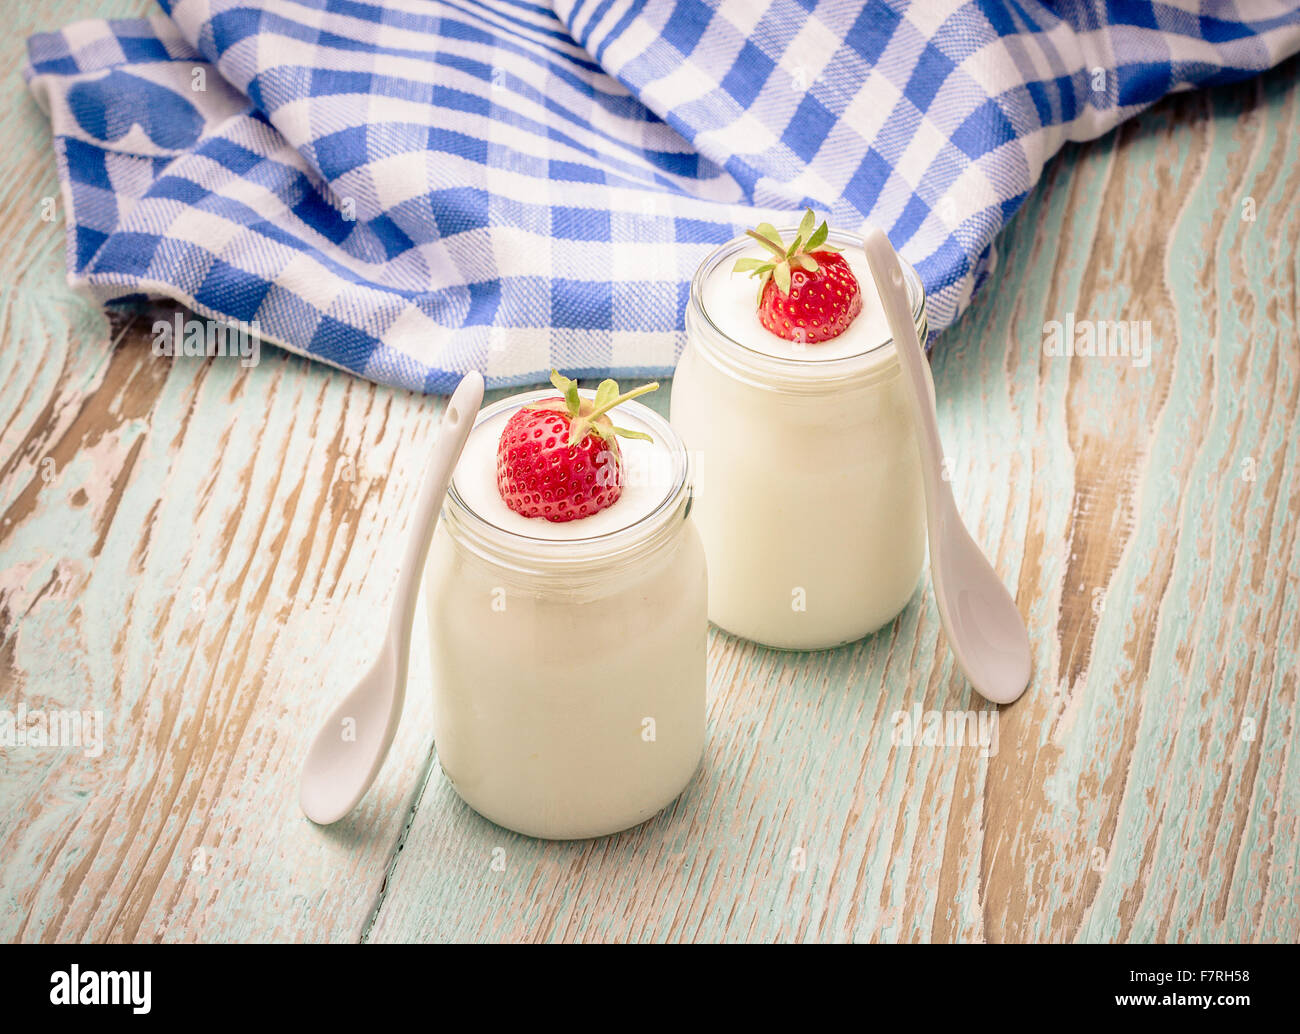 Copa de yogur griego, con fresas y cuchara de cerámica Foto de stock